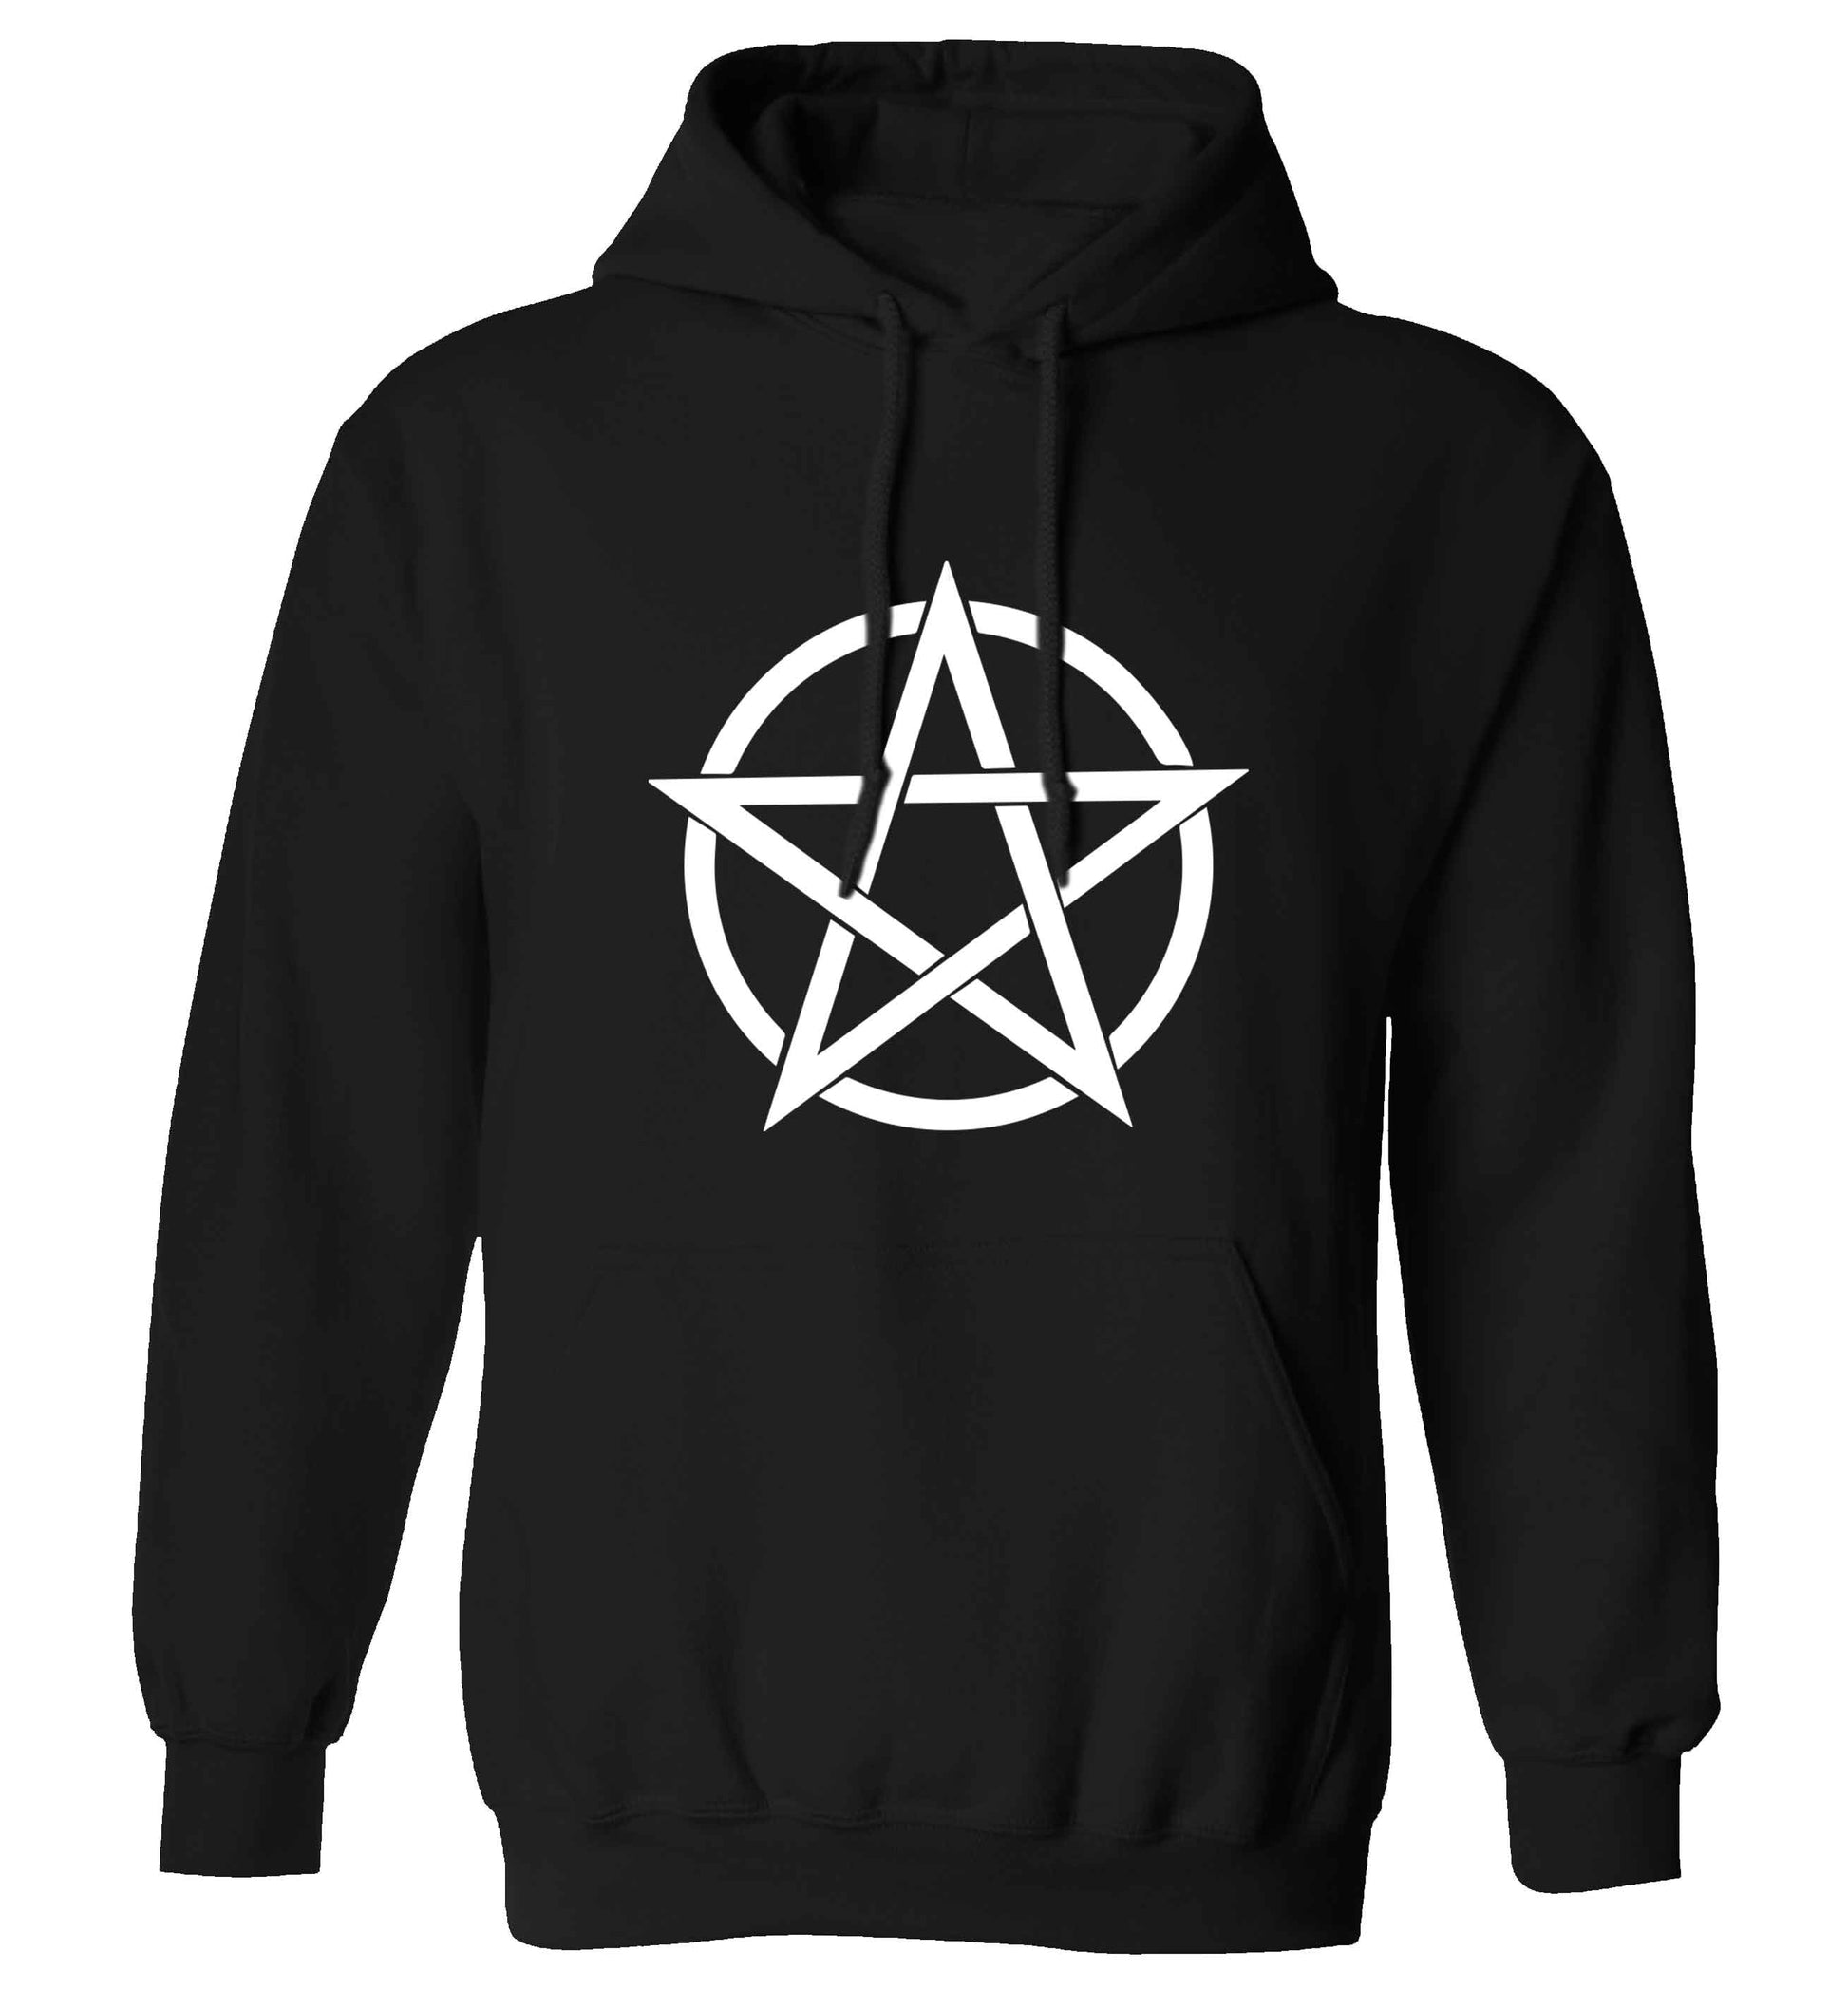 Pentagram symbol adults unisex black hoodie 2XL